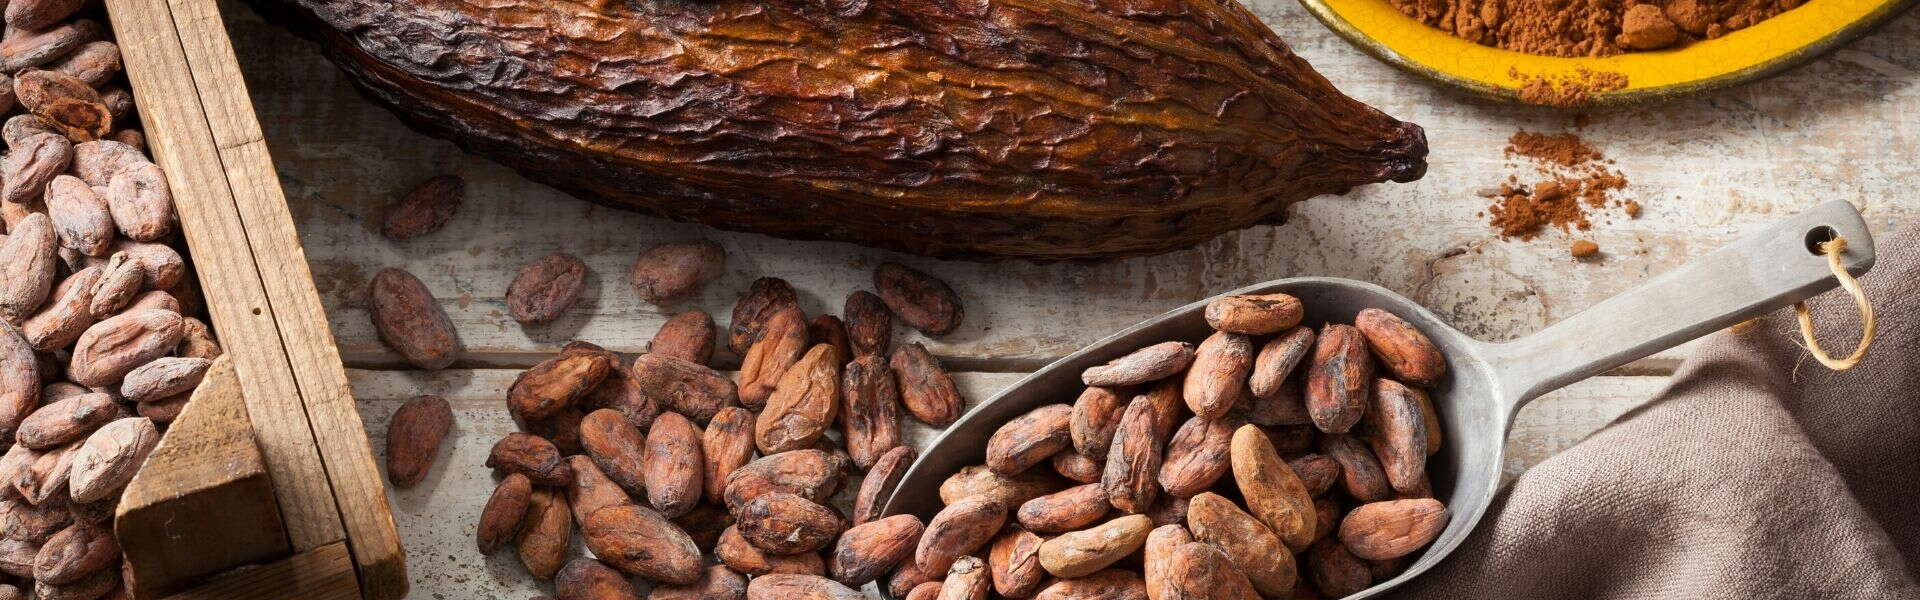 Benefici del Cacao | Come il cacao migliora la funzione cognitiva